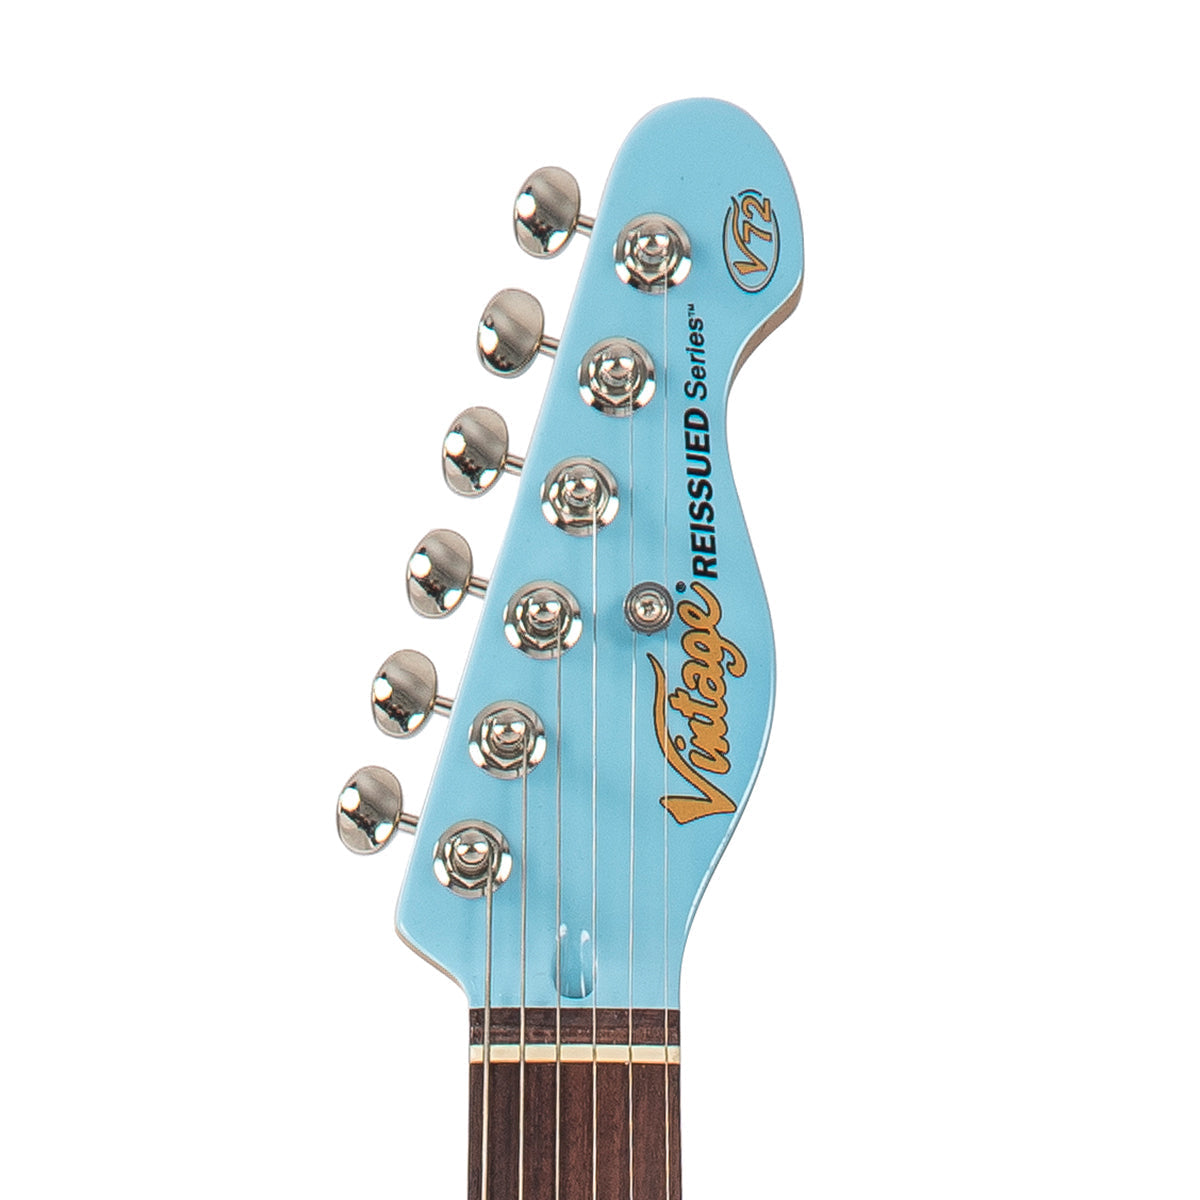 Vintage V72 ReIssued Electric Guitar ~ Laguna Blue, Electric Guitar for sale at Richards Guitars.